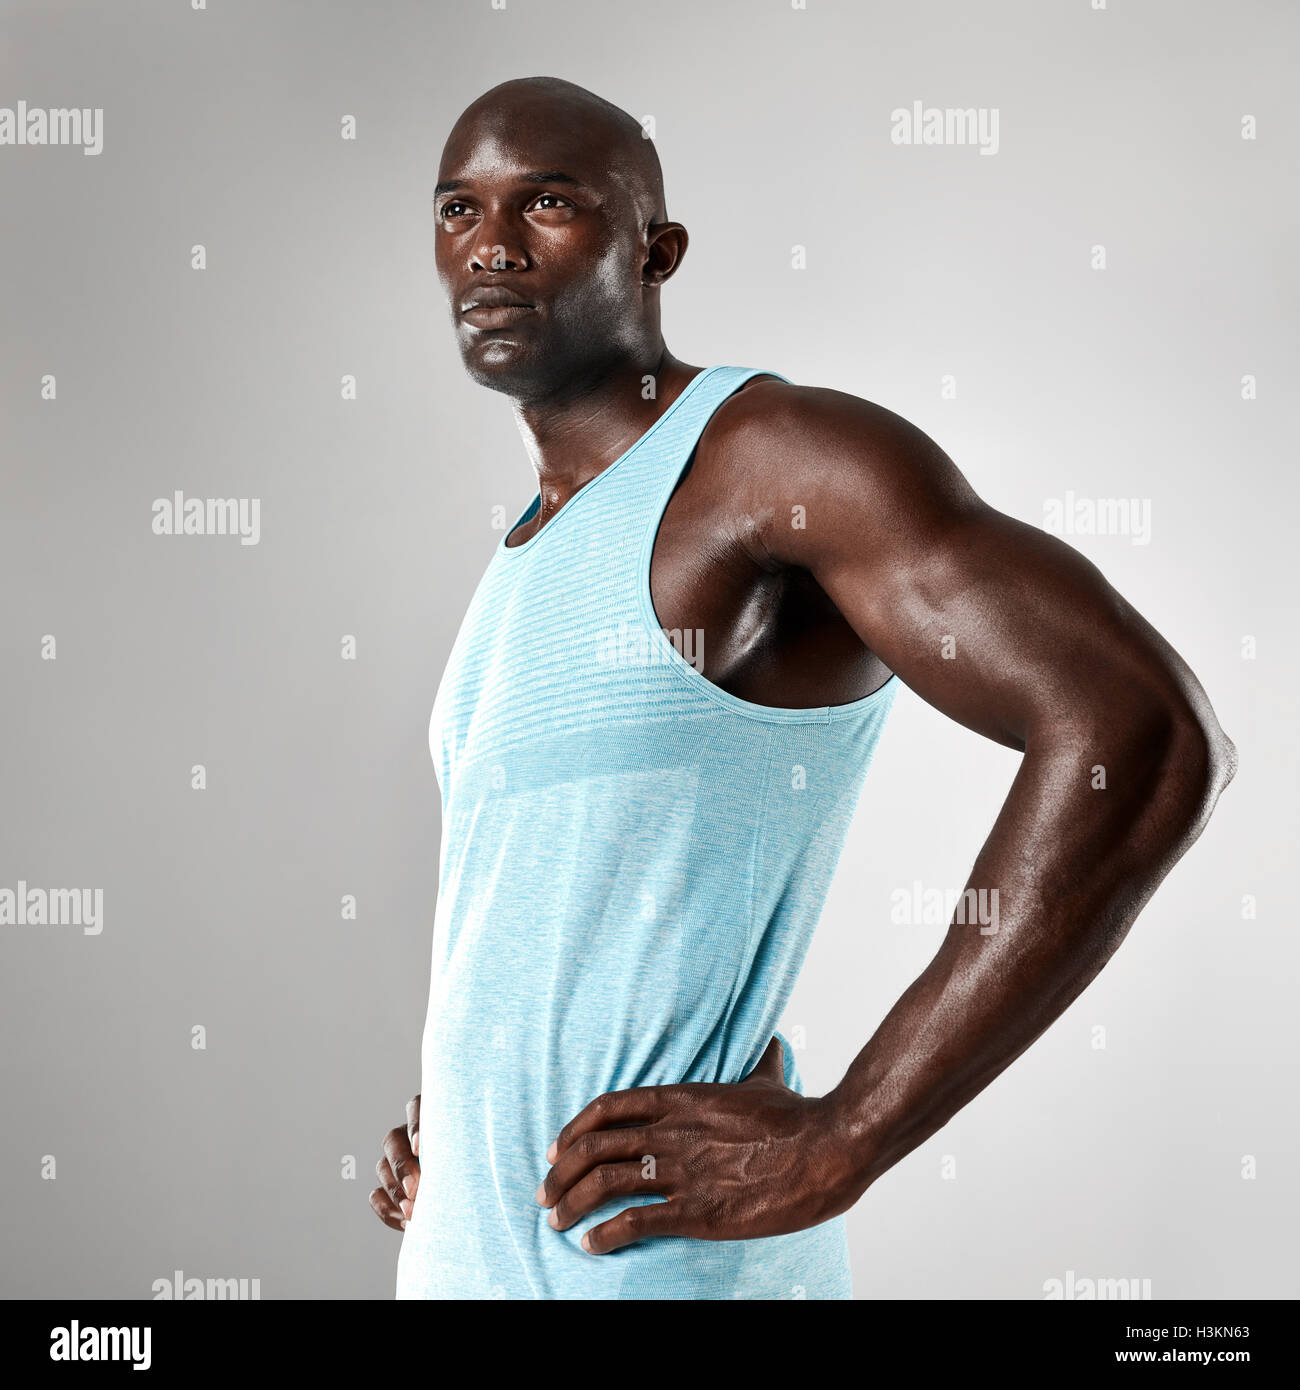 Porträt von gesunden jungen schwarzen Mann mit muskulösen Körper stehend vor grauem Hintergrund. Afro american Fitness-Modell mit Händen Stockfoto